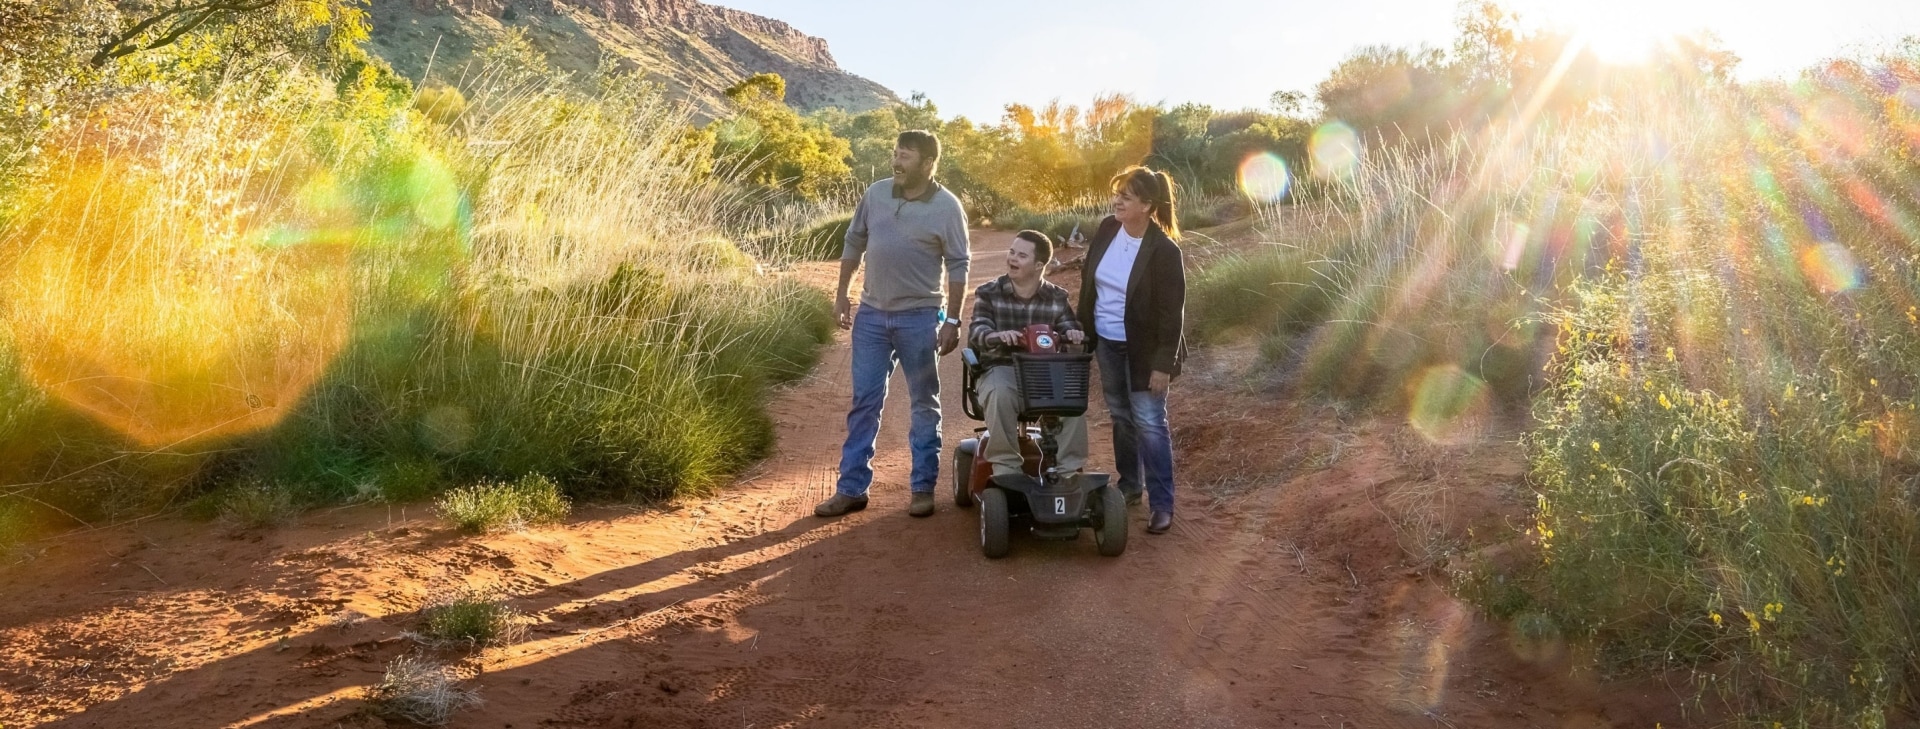 Ein E-Rollstuhlfahrer und zwei weitere Personen wandern zusammen durch das Grün und die rote Erde des Alice Springs Desert Park in Alice Springs, Northern Territory.